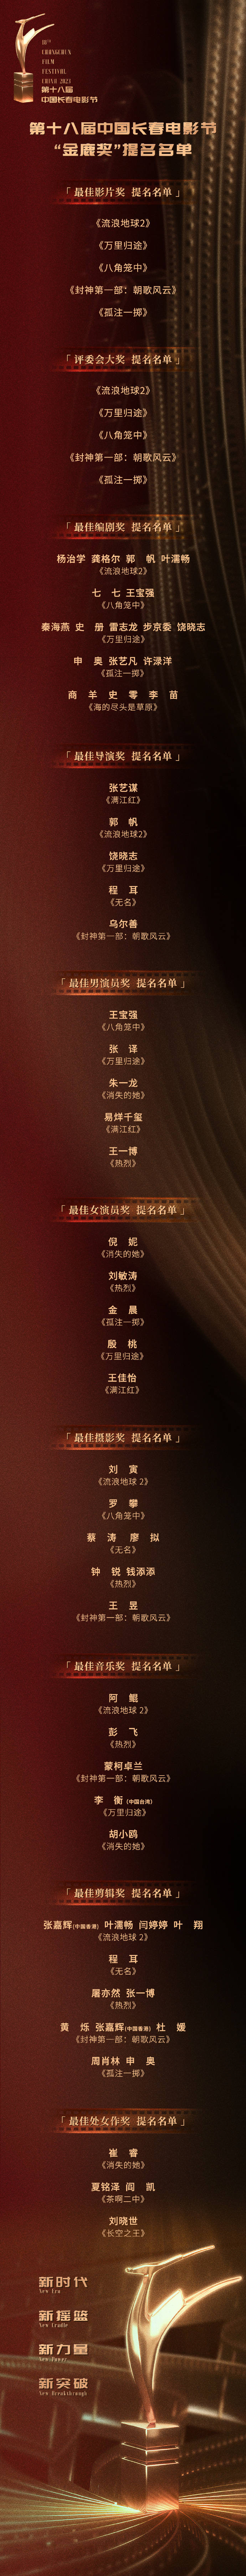 中国长春电影节“金鹿奖”名单正式公布 张译朱一龙被提名影帝